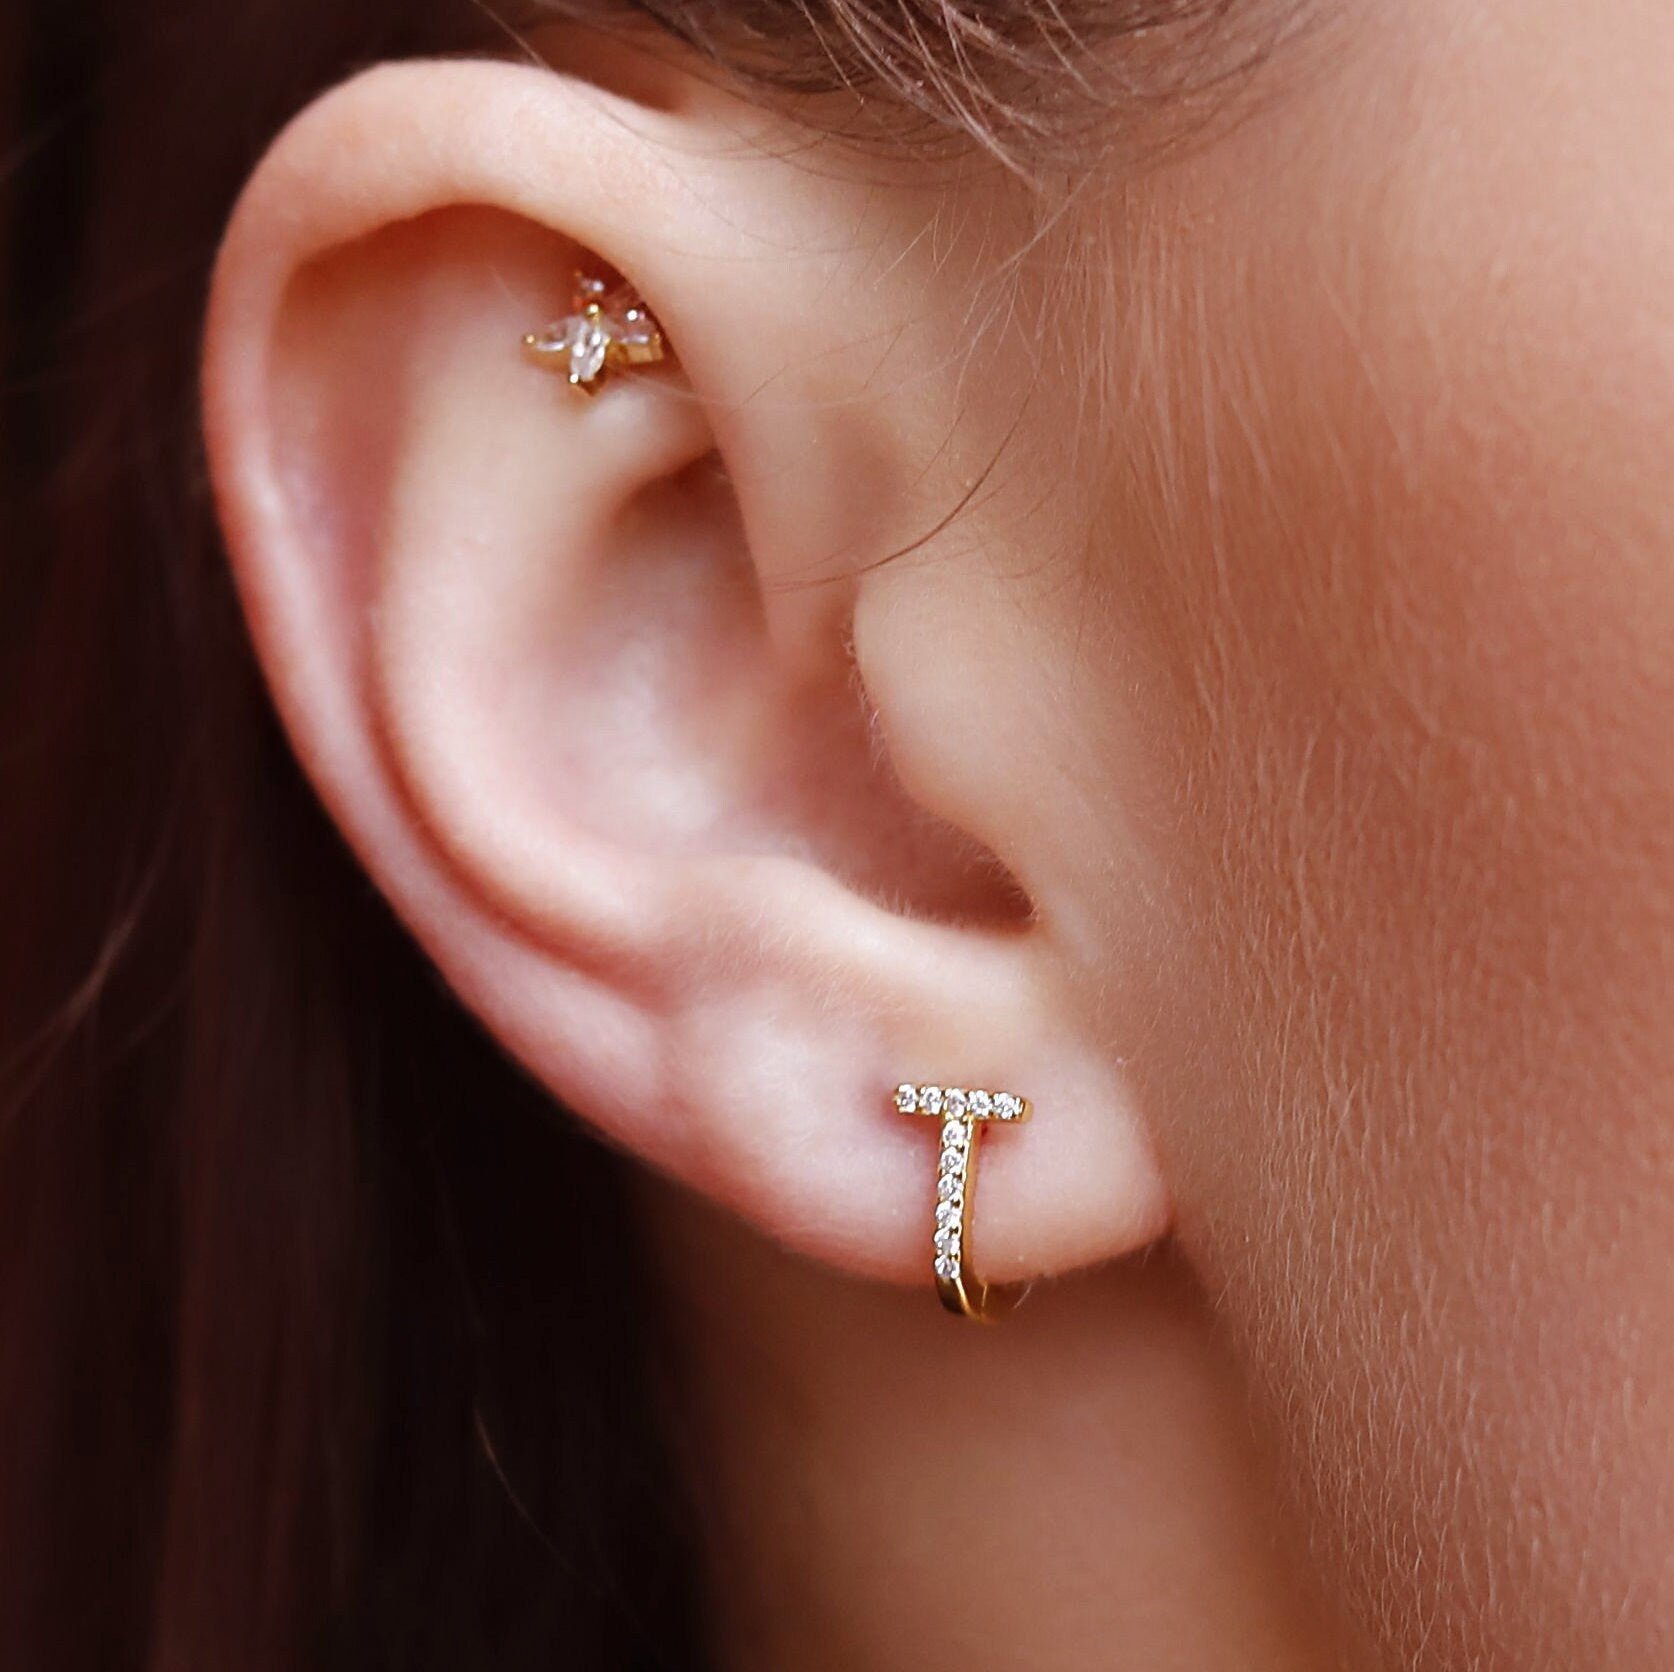 Sterling Silver Huggie Hoop Earrings | Delicate Pave Hoop Earrings | Minimalist Earrings | Silver Geometric Hoops | Simple Silver Earrings |